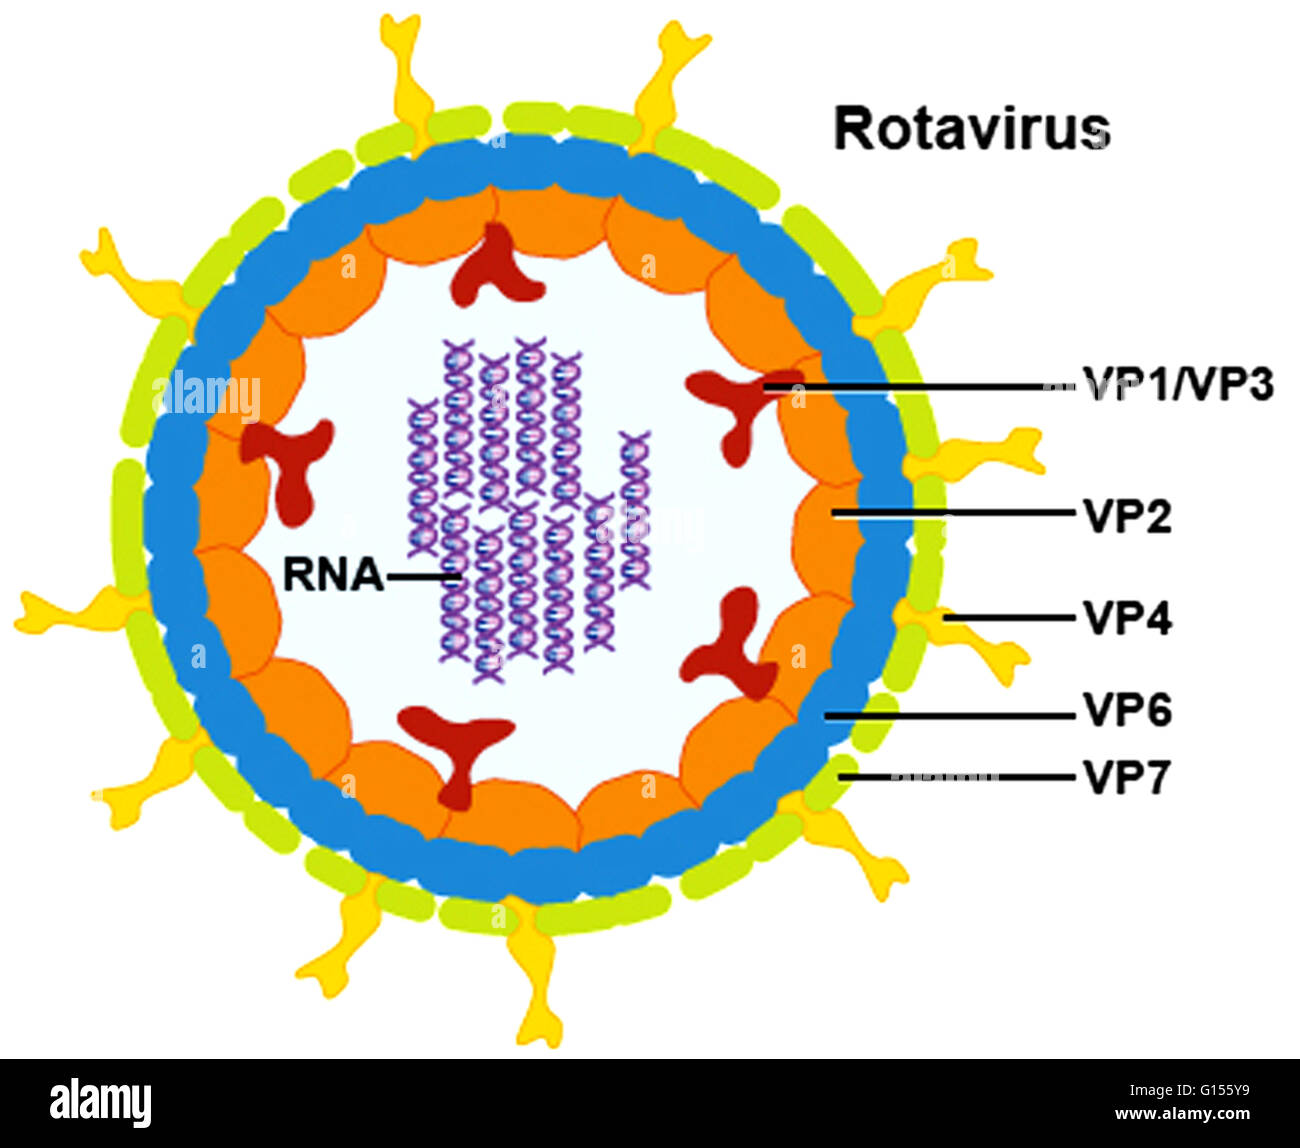 Eine Rotavirus ist ein Rad-förmigen Virus, der seinen Namen von seiner komplexen Form bekommt. Sein Genom besteht aus 11 doppelsträngige RNA-Segmente, die sechs Strukturproteinen (VP1, VP2, VP3, VP4, VP6 & VP7) und sechs Elementoptionen Proteine (NSP1-6) erzeugen. Jeder virus Stockfoto